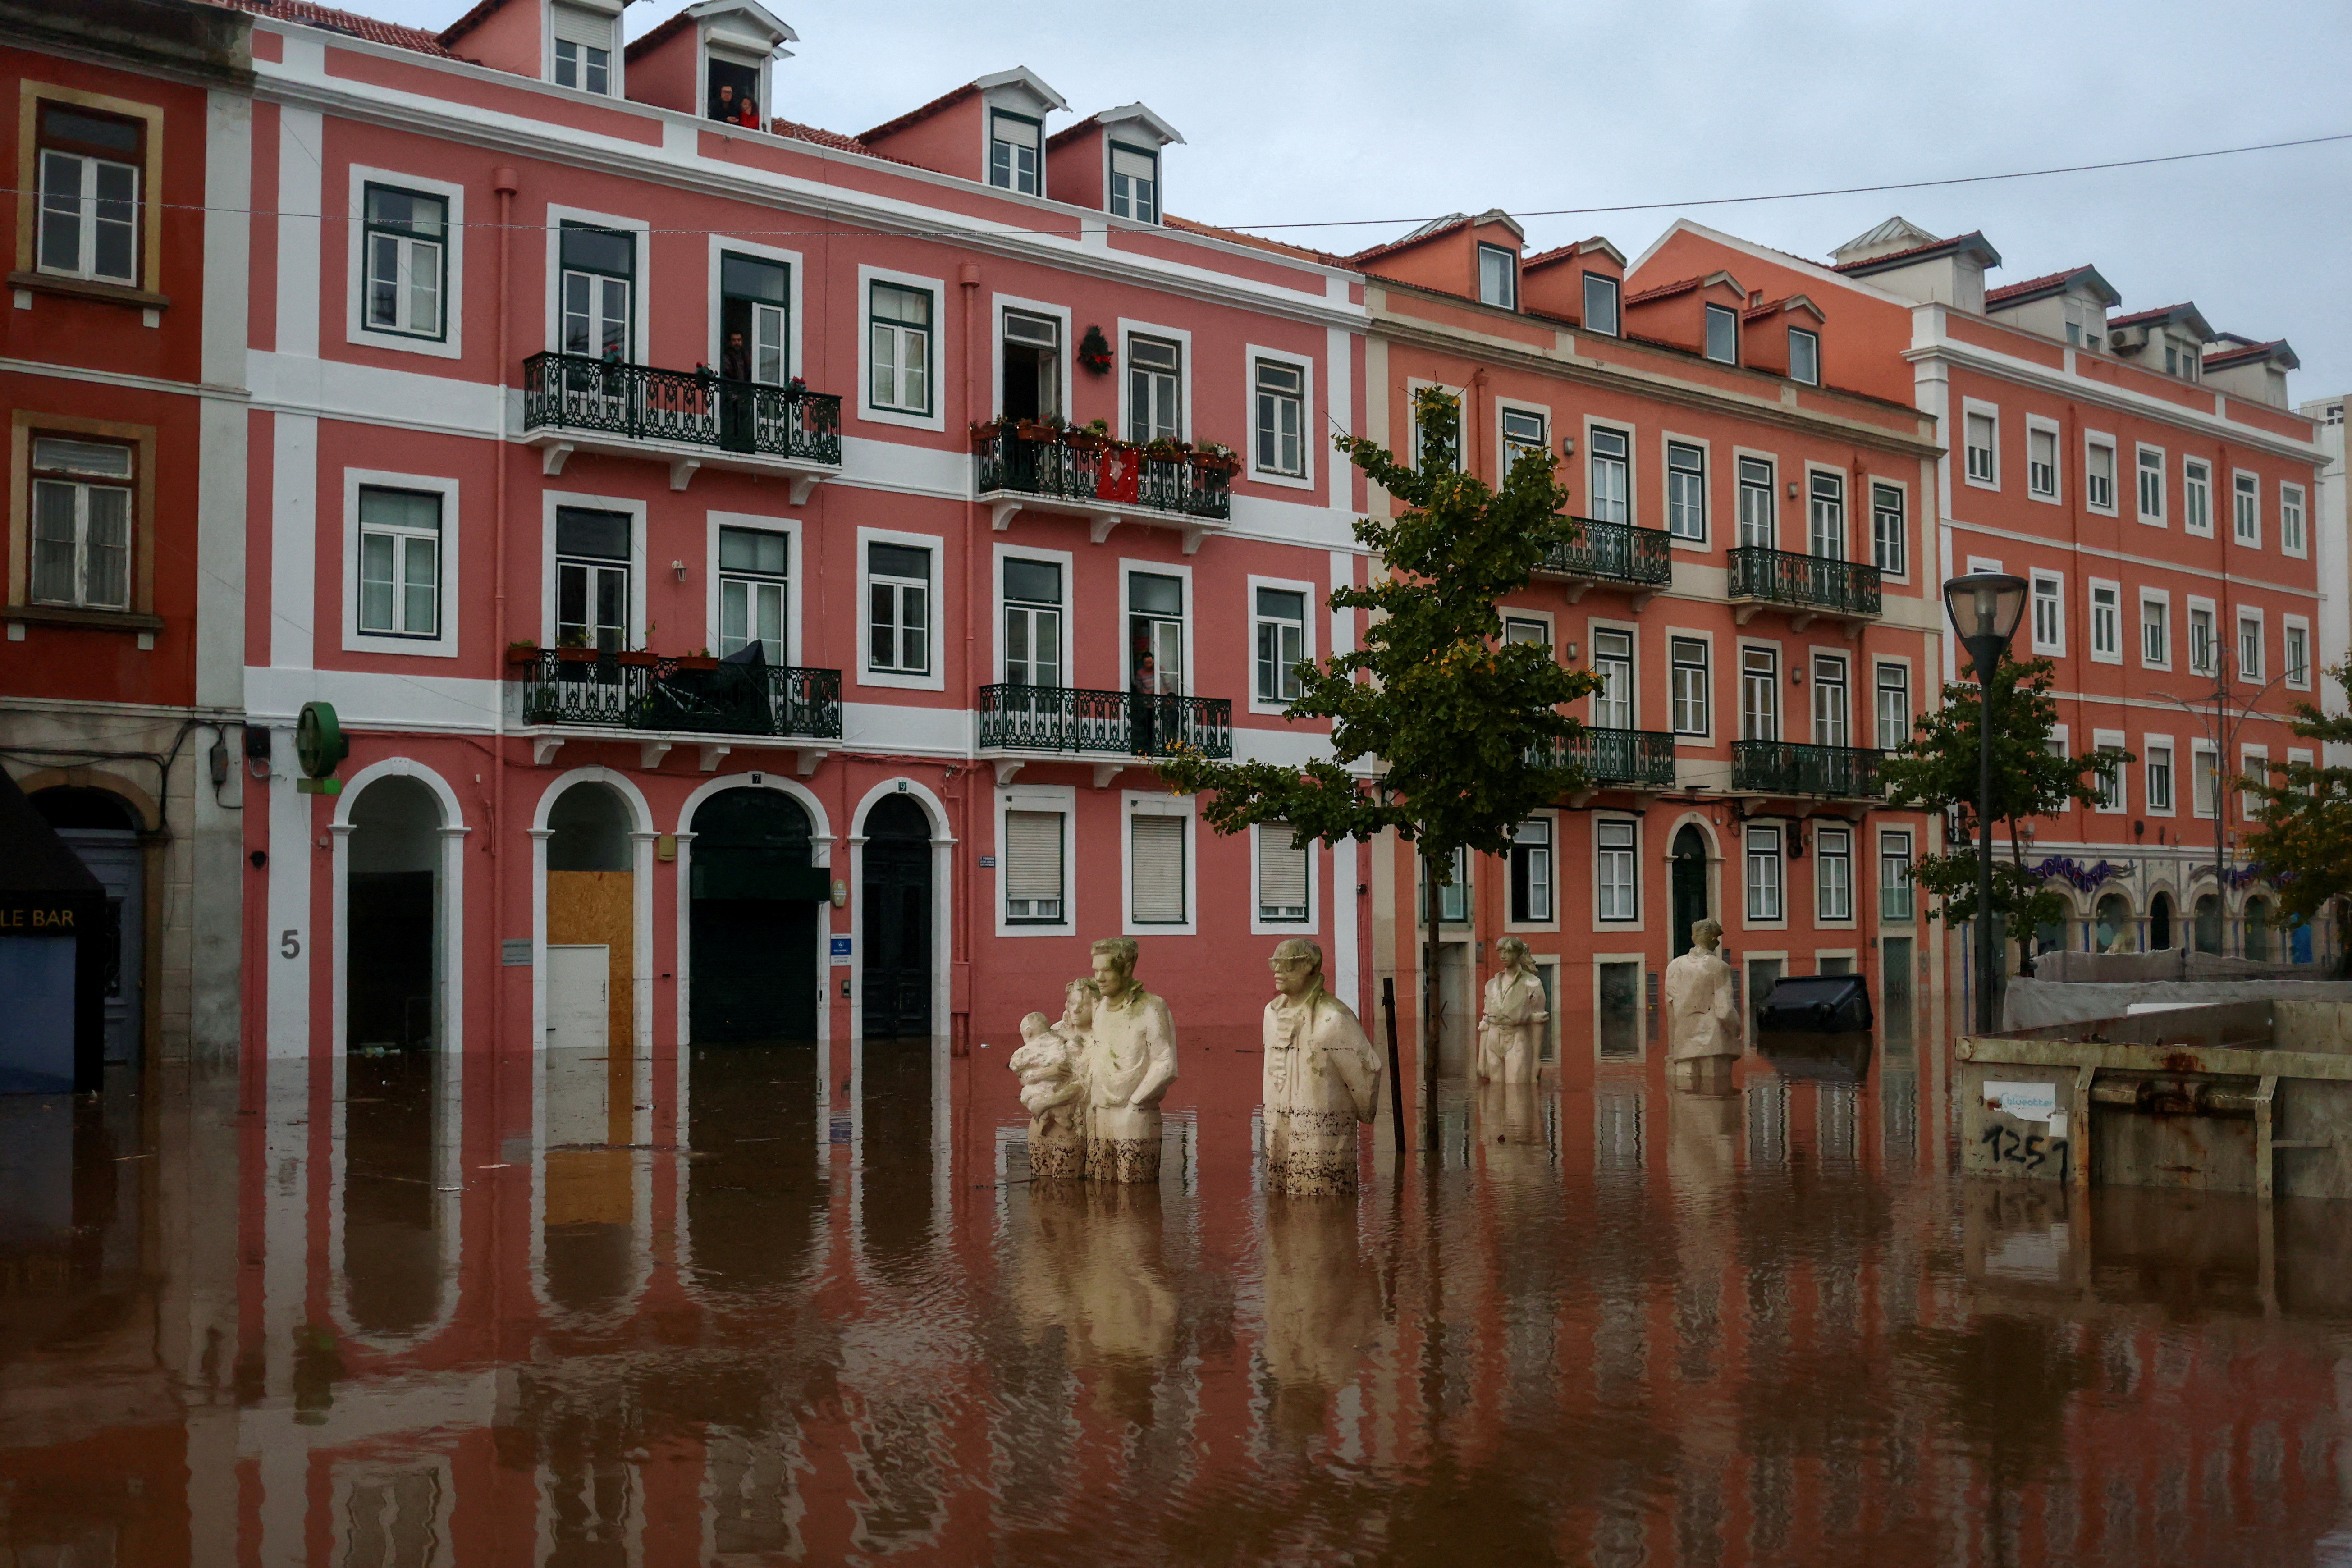 Ζητήθηκε από τους κατοίκους να παραμείνουν στα σπίτια τους καθώς οι έντονες βροχοπτώσεις και οι πλημμύρες έπληξαν την Πορτογαλία